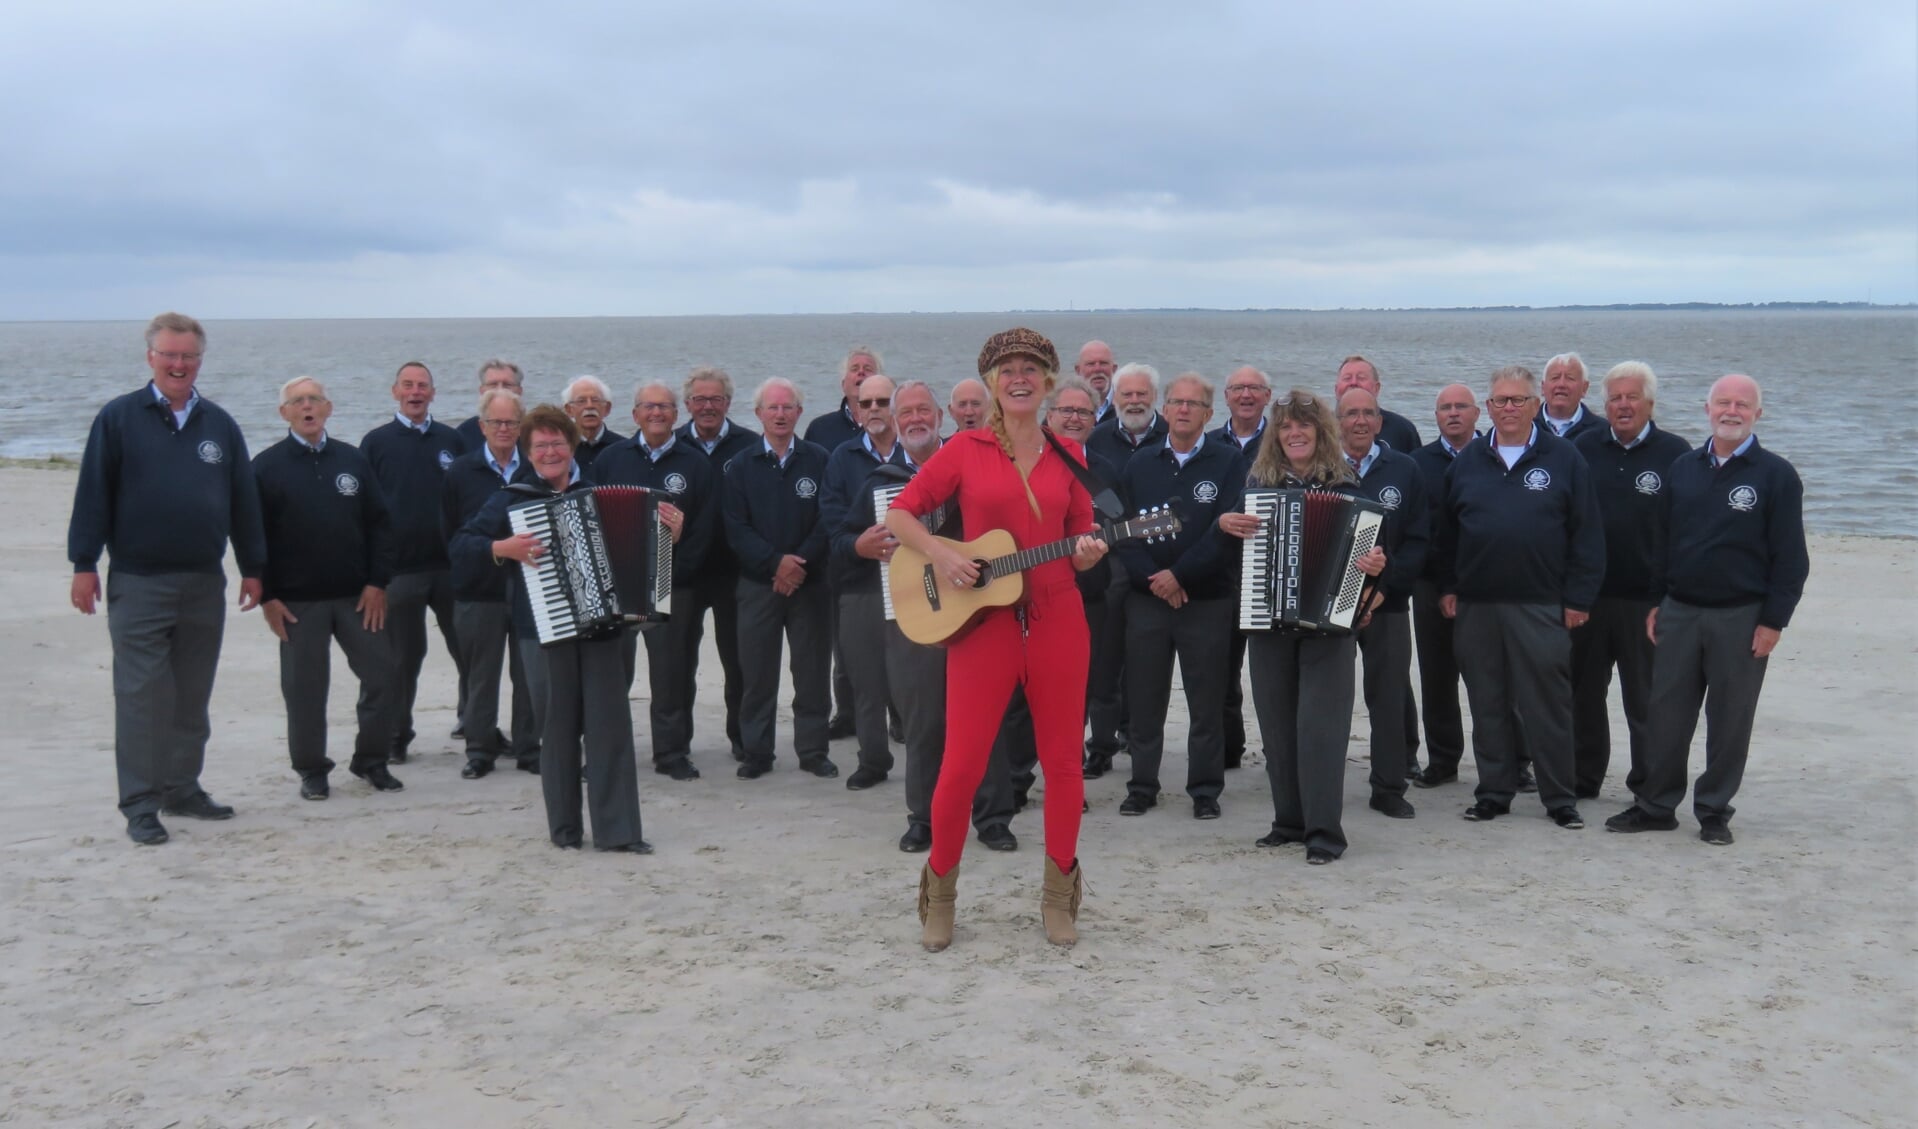 Jetta Post en de Magellan-Singers op het stadsstrand van Delfzijl.